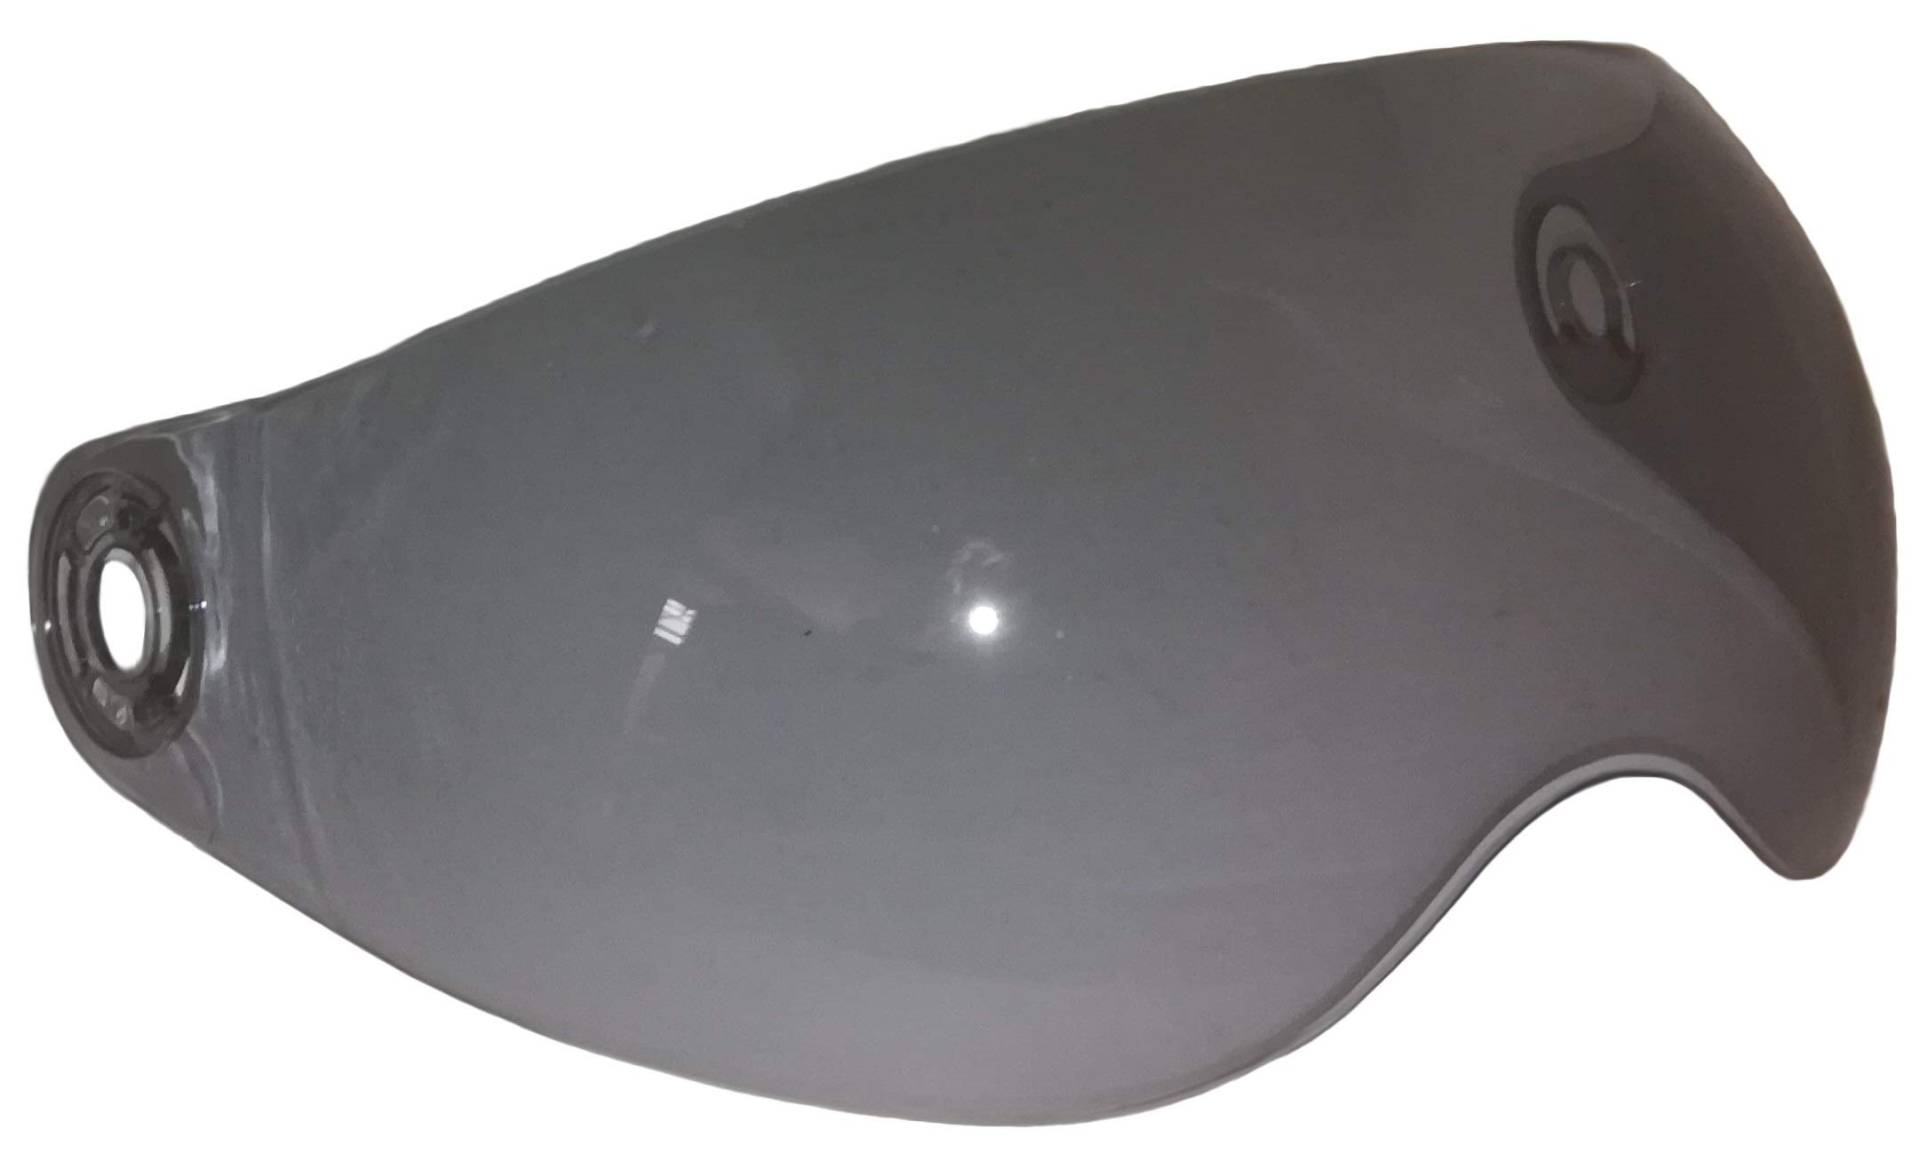 Protectwear Getöntes Ersatzvisier KURZ für Motorradjethelm H730 / H710 passend für alle Helmgrößen, dunkel getönt von protectWEAR